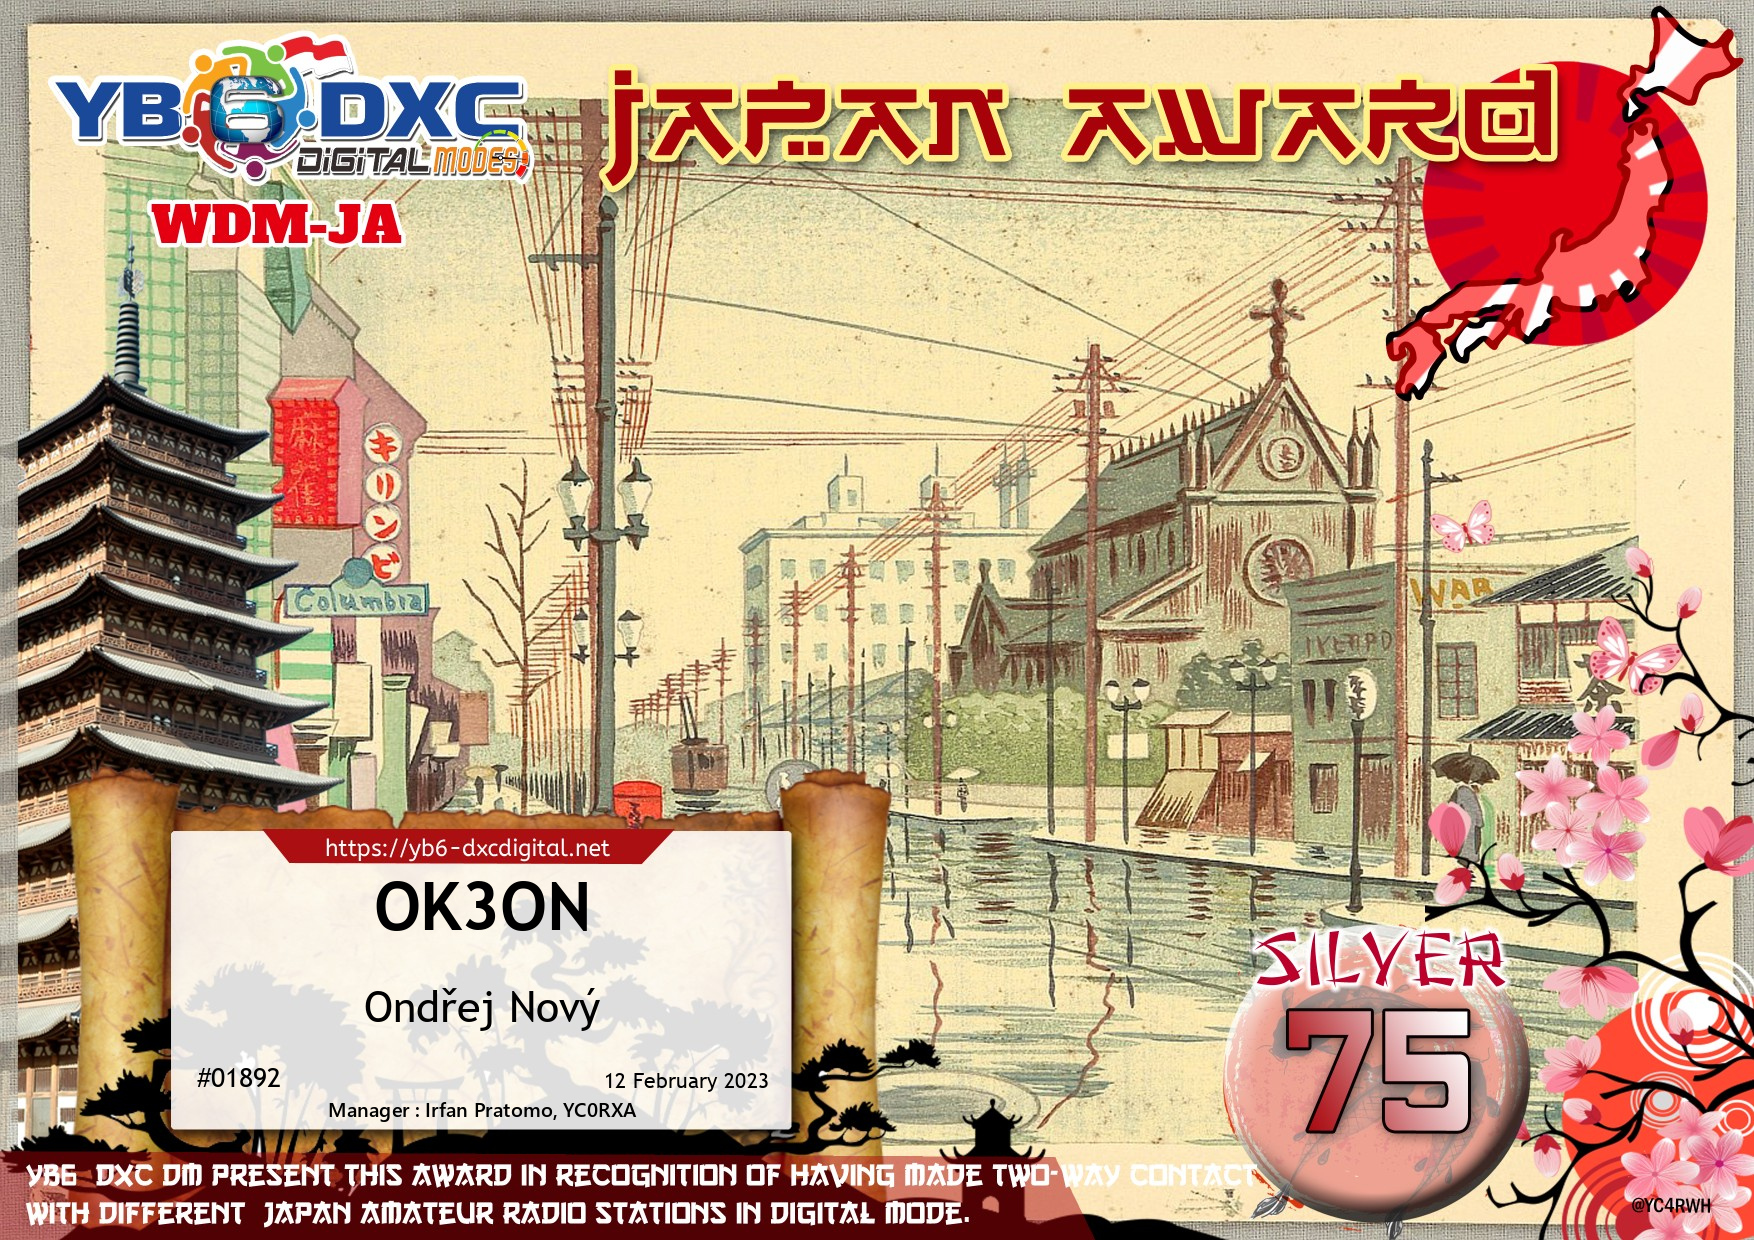 awards/OK3ON-WDMJA-SILVER75_YB6DXC.jpg